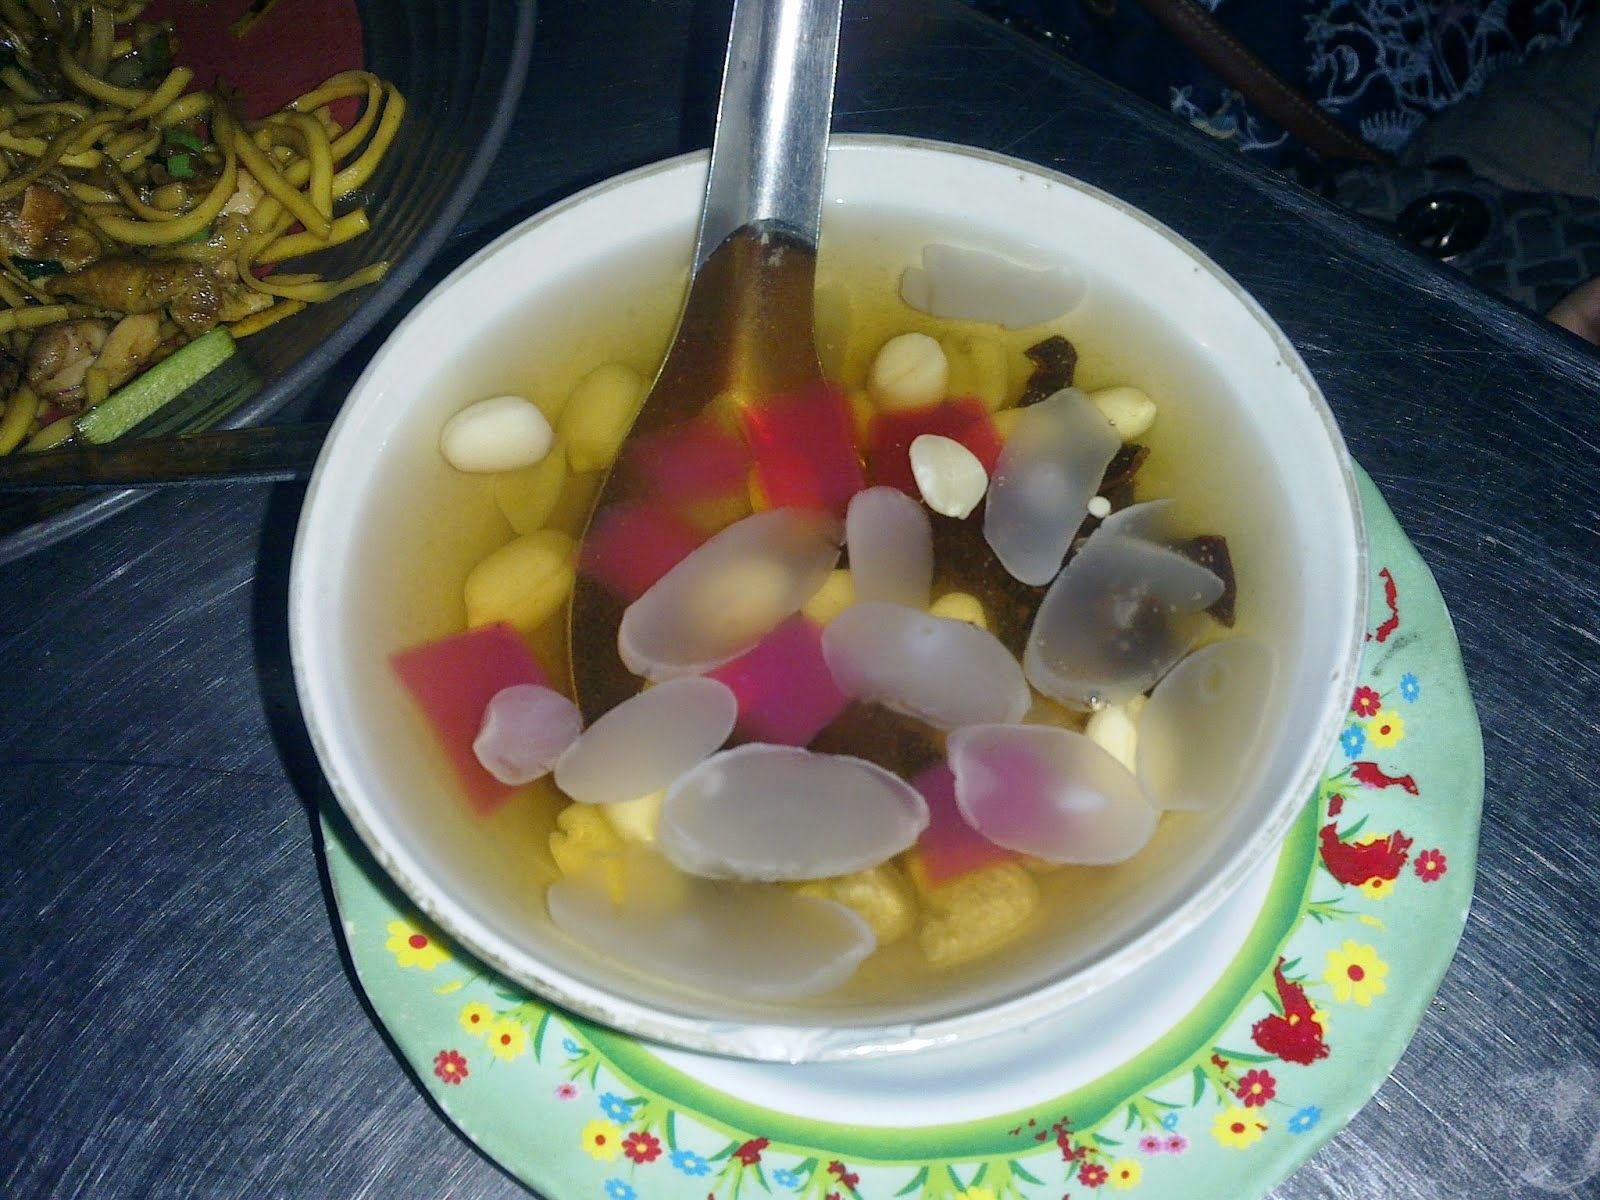 Sekoteng là một trong các loại thức uống truyền thống ở Indonesia